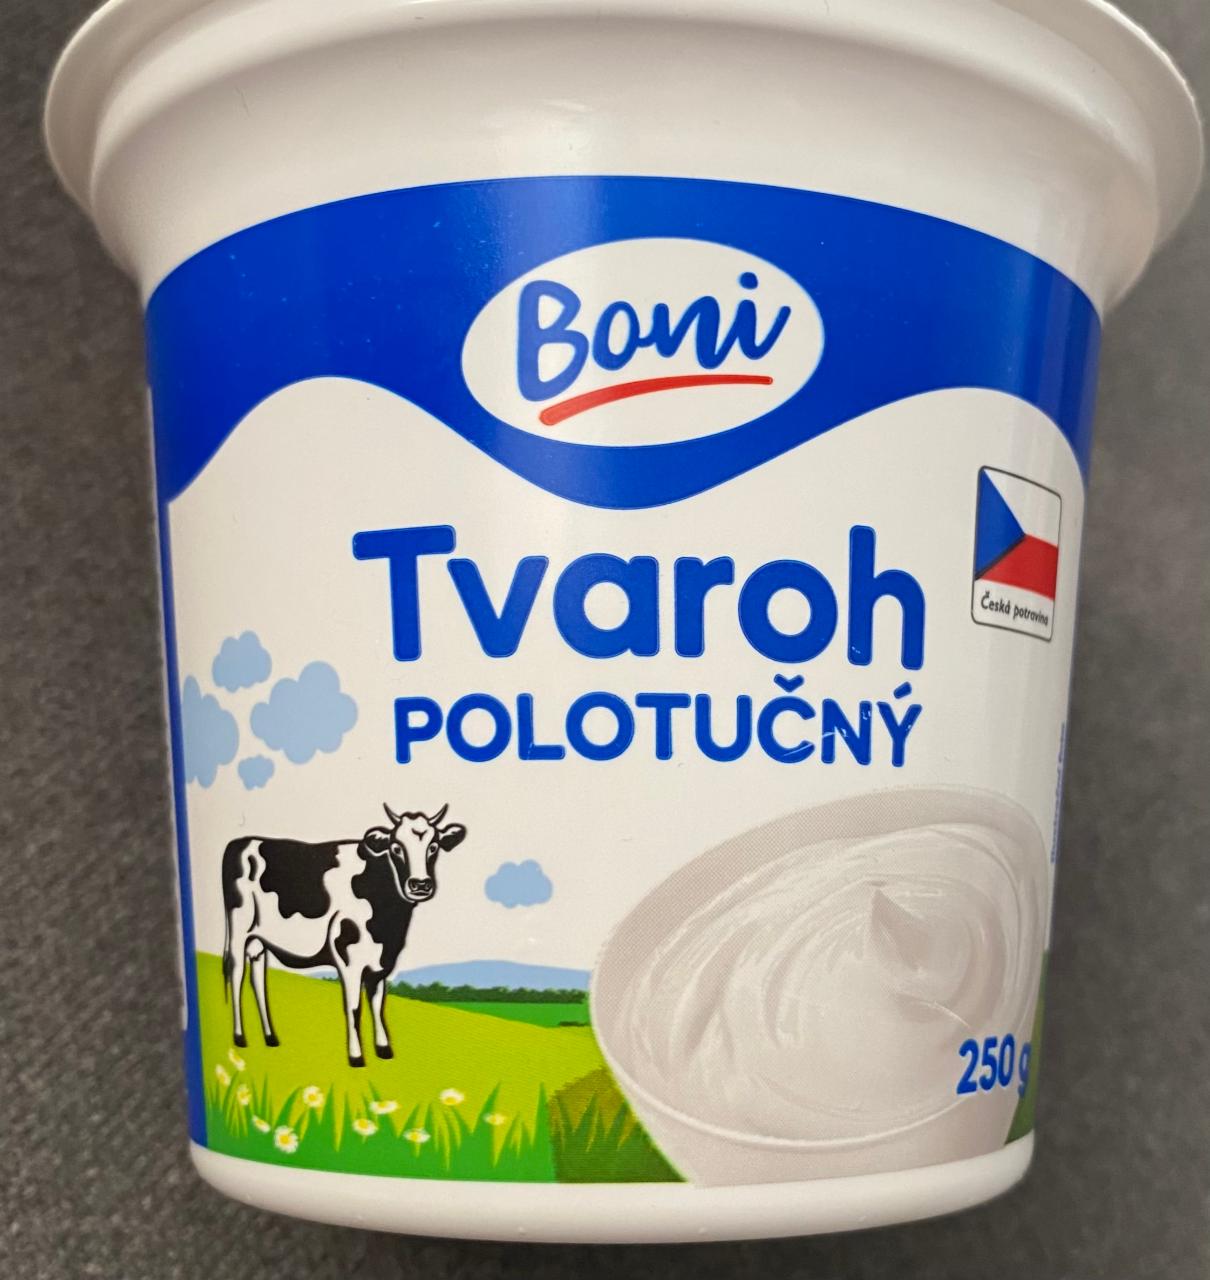 Фото - Сир кисломолочний напівжирний Tvaroh Polotučný Boni